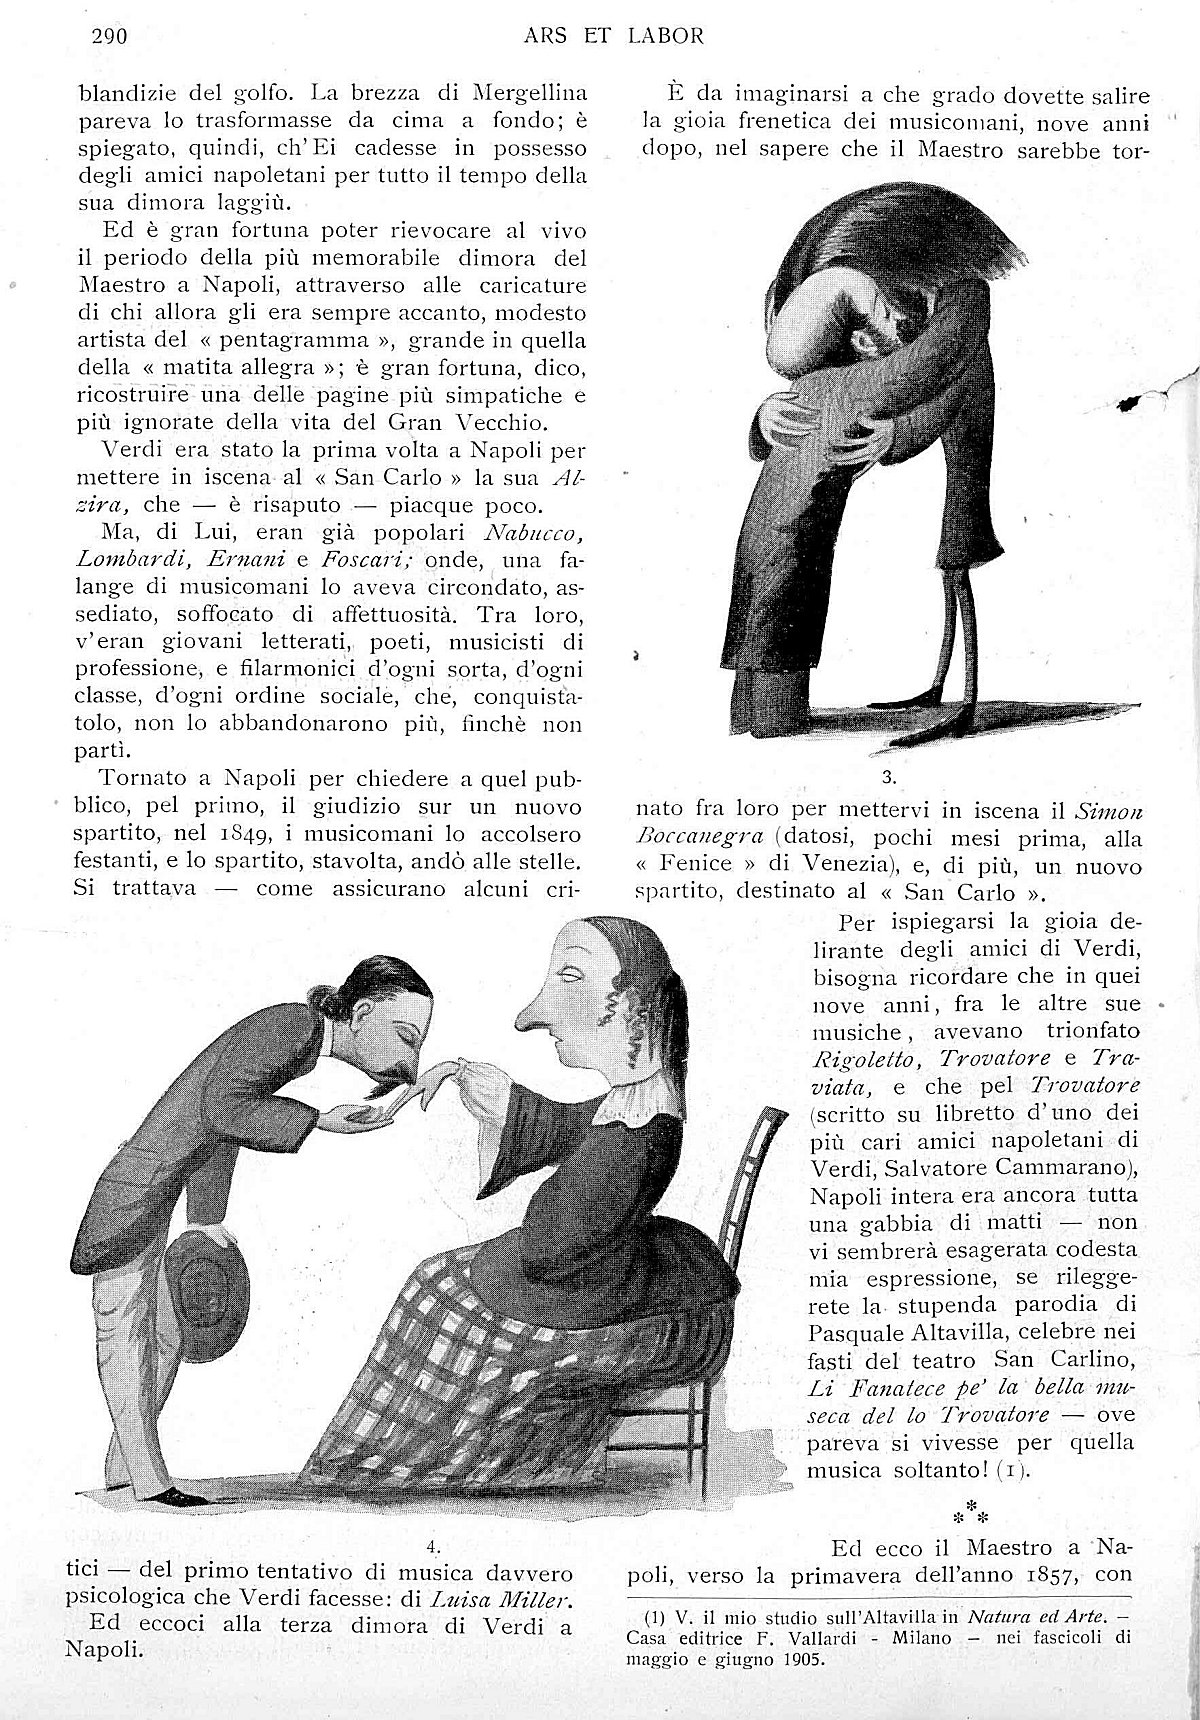 "Ars et Labor", Aprile 1906, anno 61°, n. 4, pag. 290